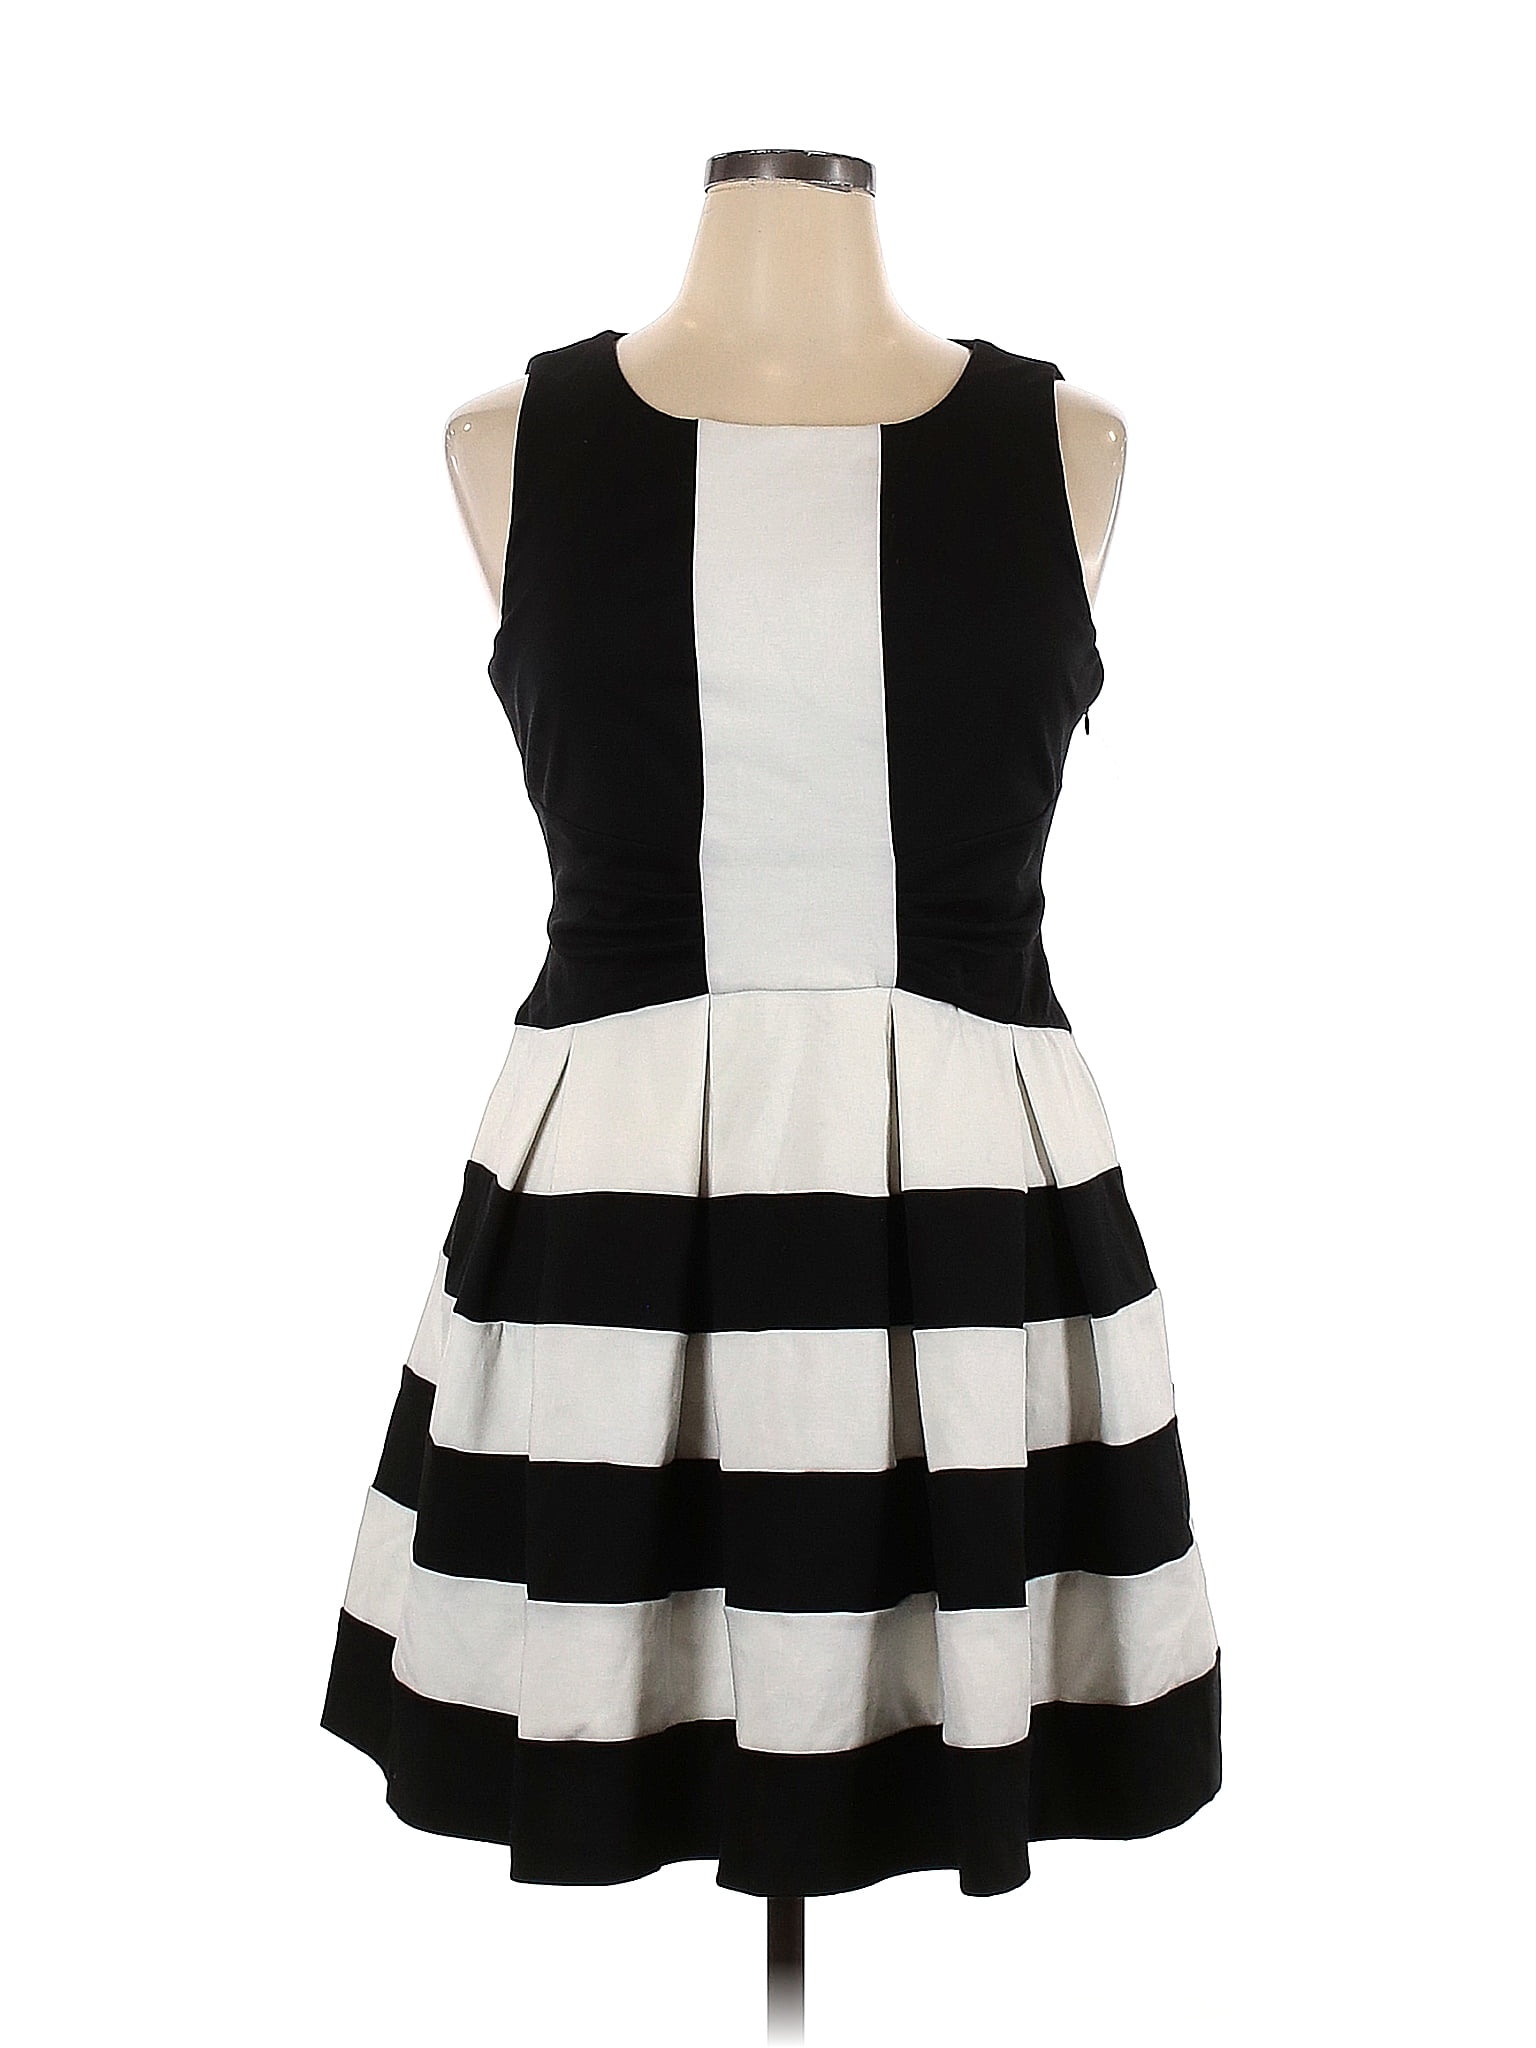 Elle Stripes Black Casual Dress Size 14 - 54% off | thredUP